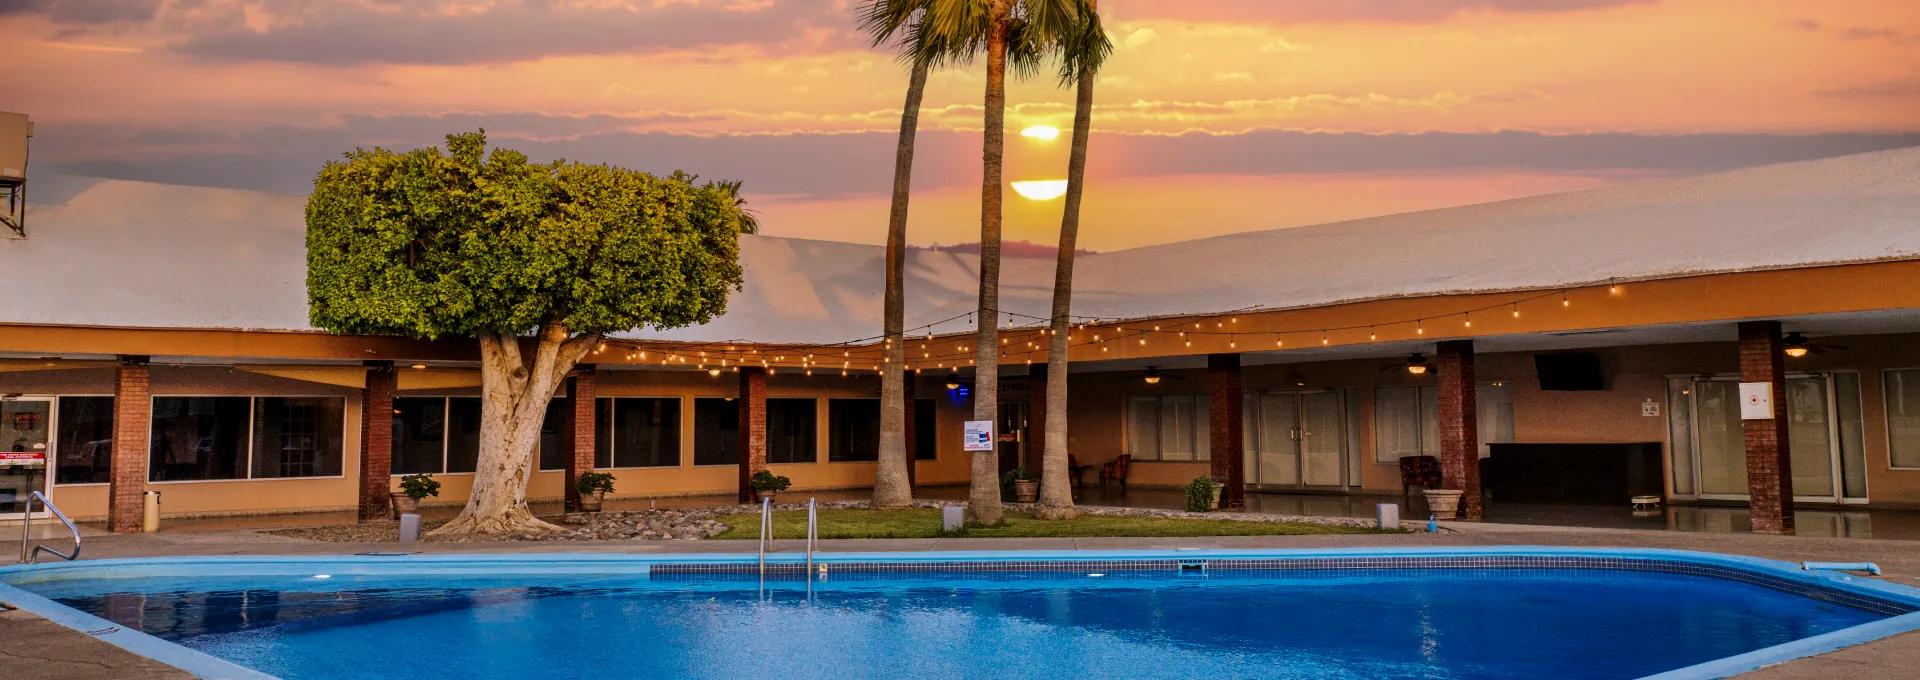 El Camino Hotel & Suites Caborca Sonora